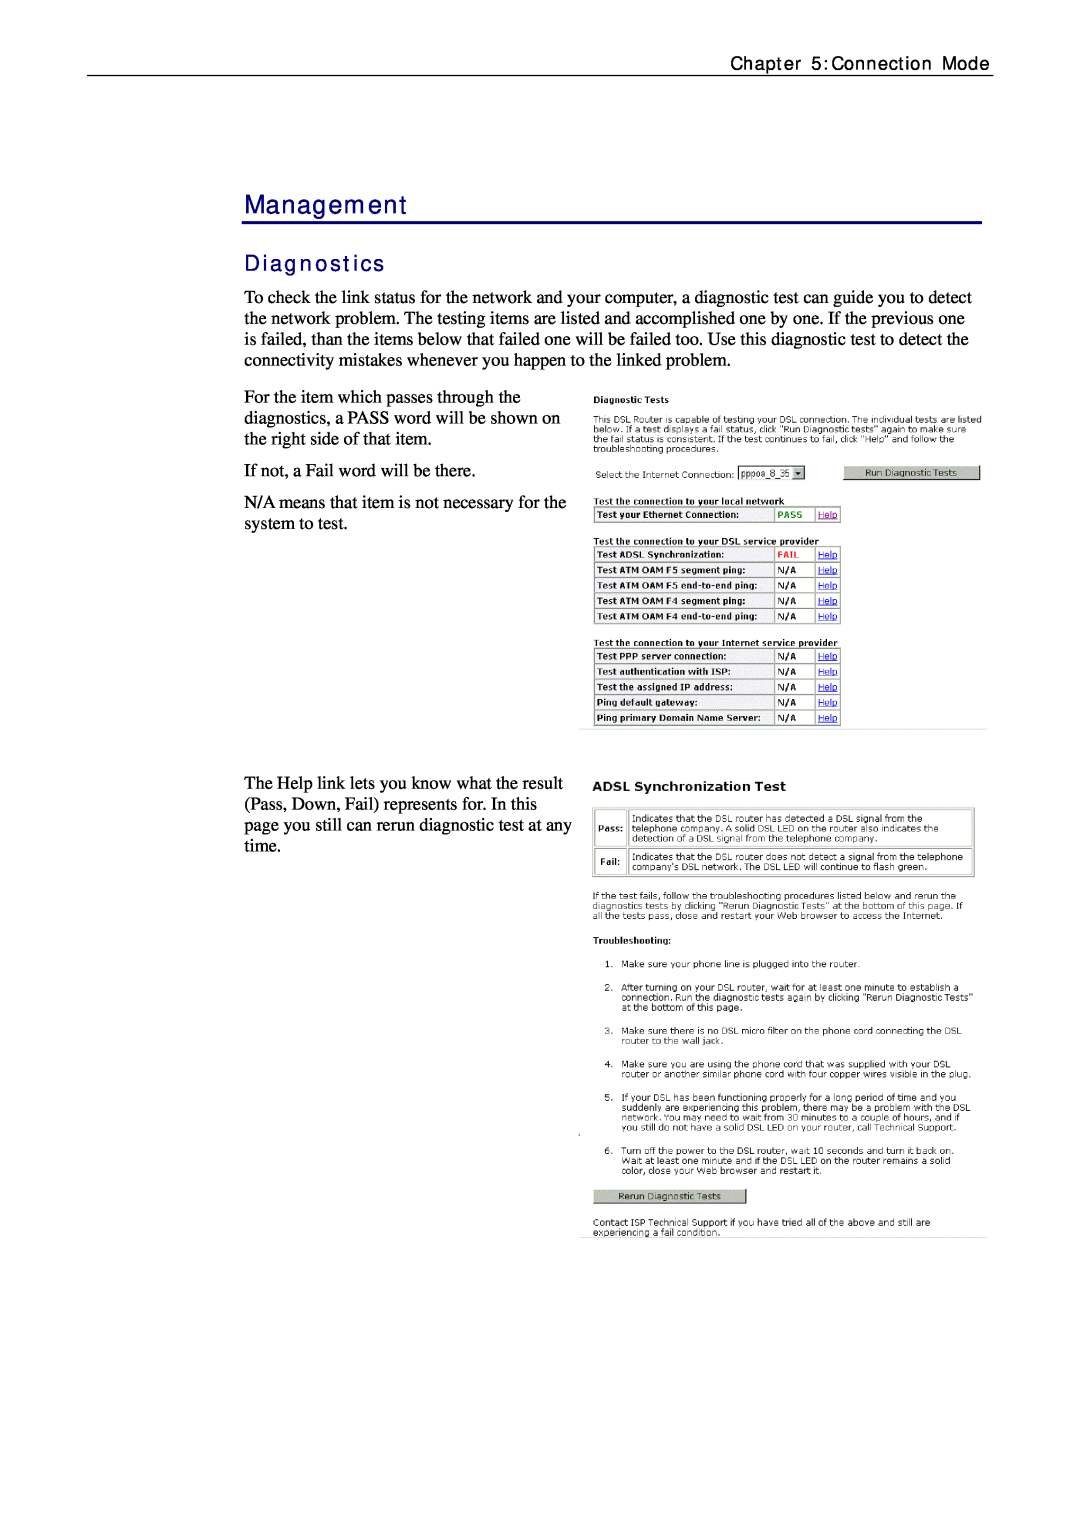 Siemens CL-010-I manual Management, Diagnostics 